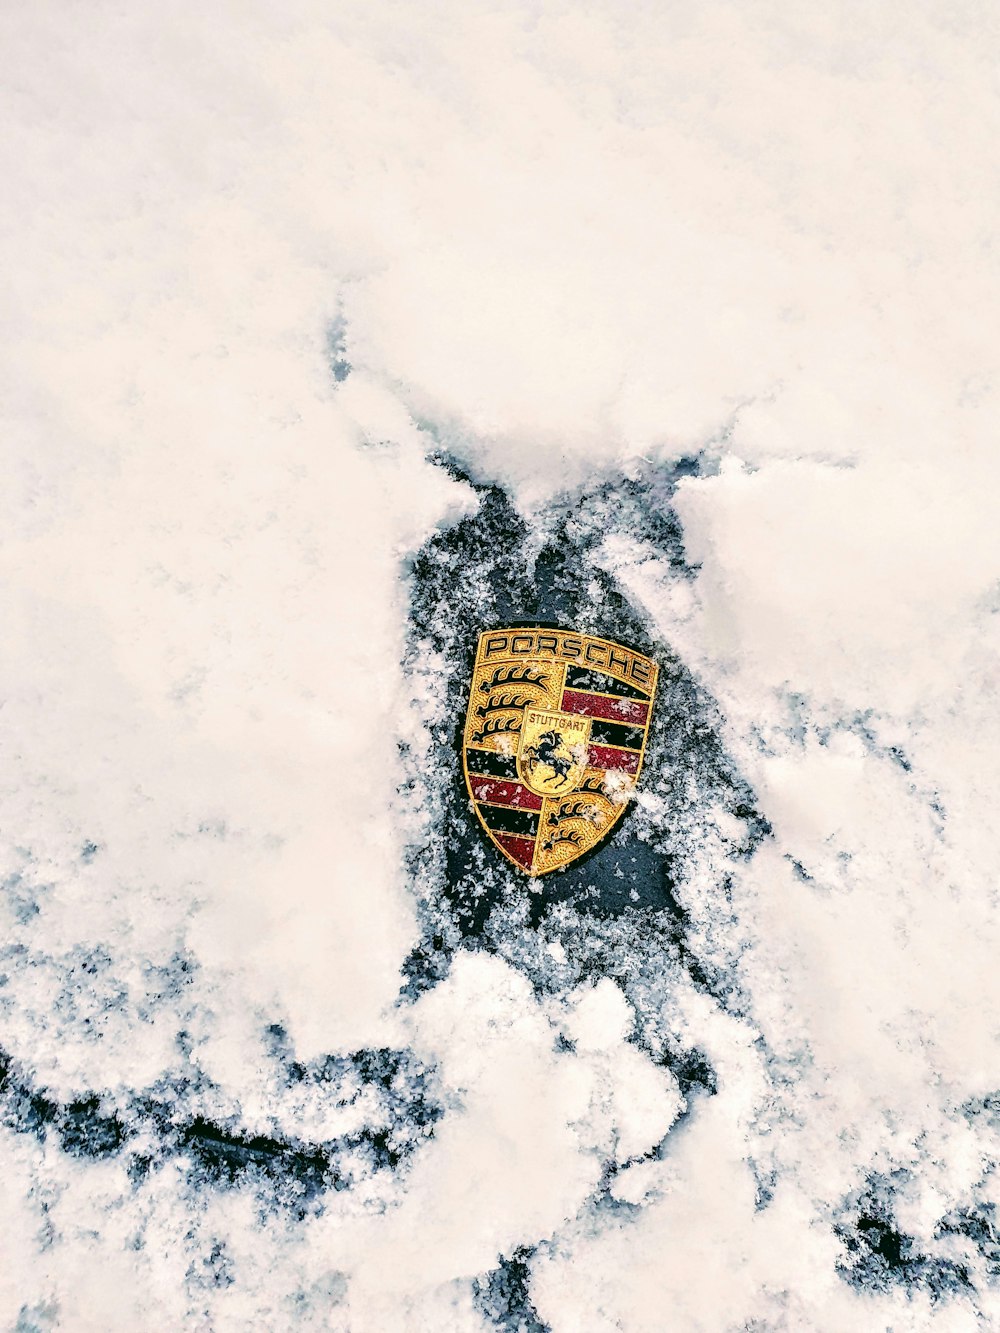 a porsche emblem is seen in the snow